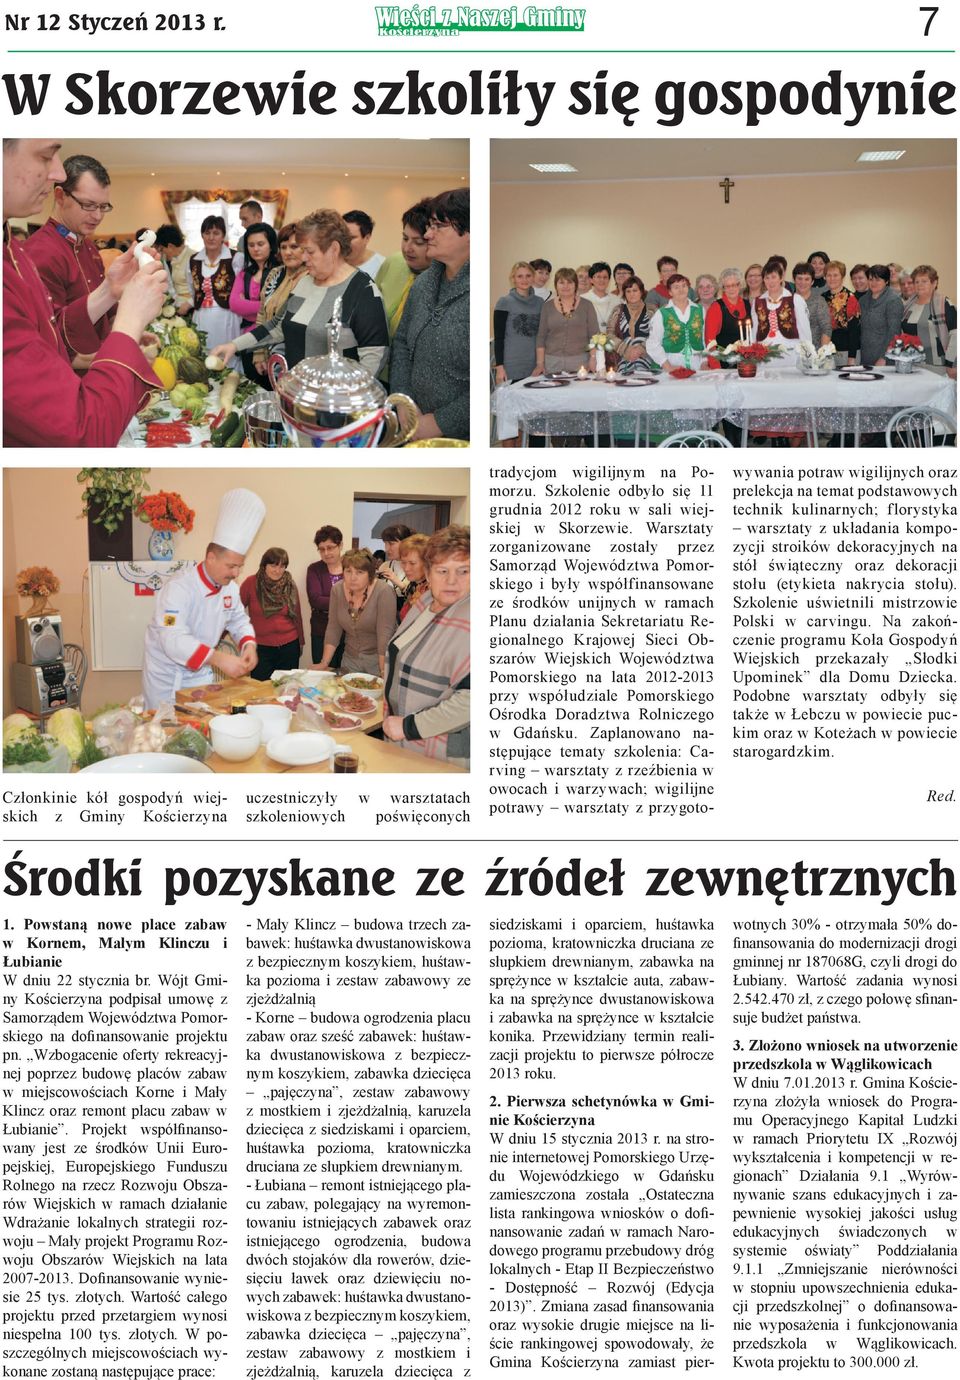 Szkolenie odbyło się 11 grudnia 2012 roku w sali wiejskiej w Skorzewie.